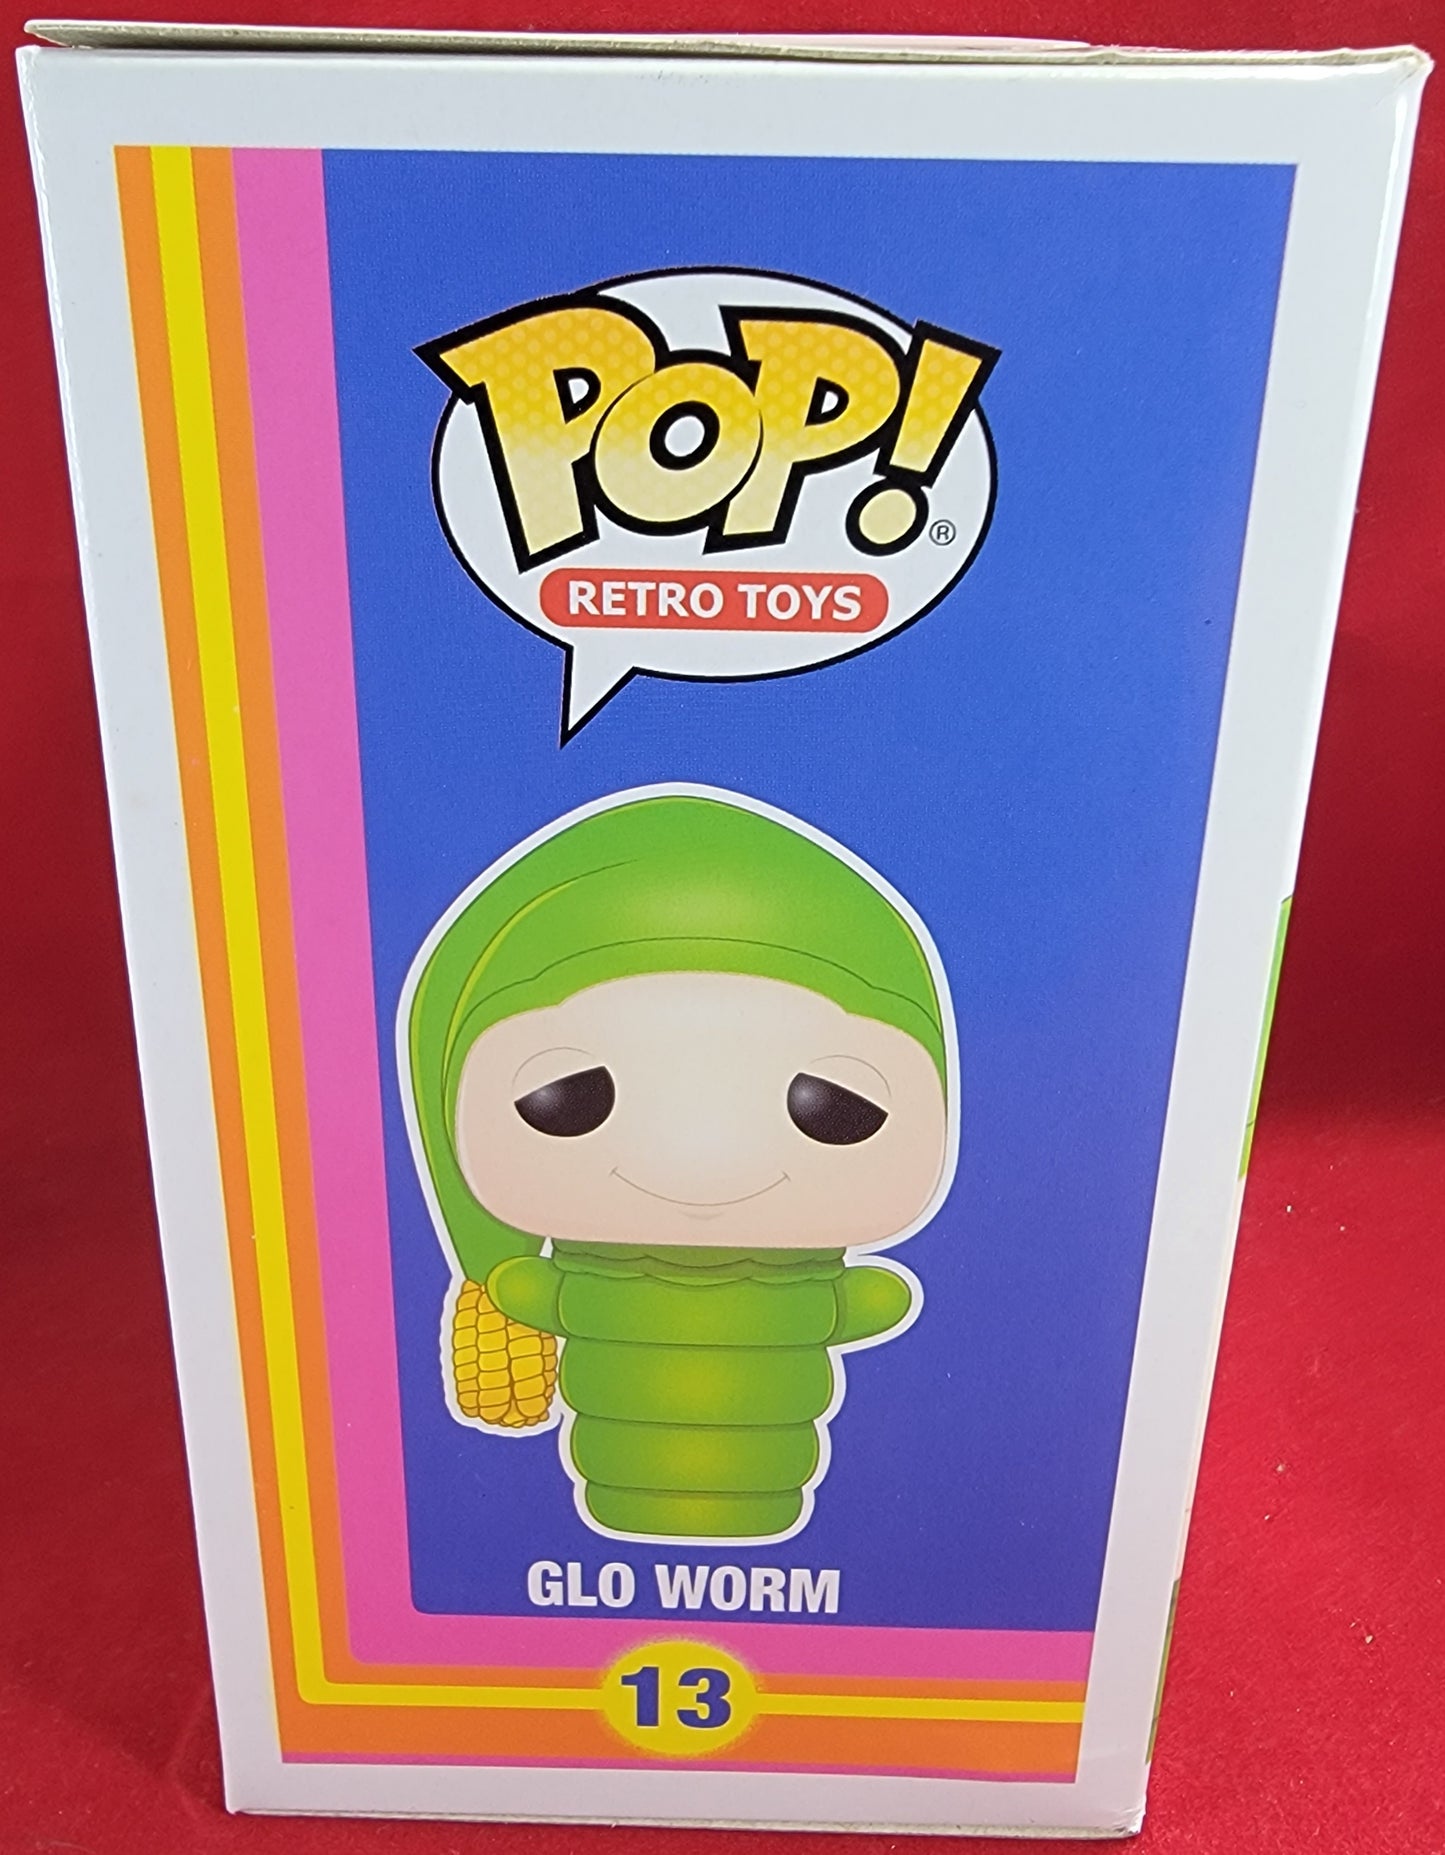 Glo worm funko # 13 (nib)